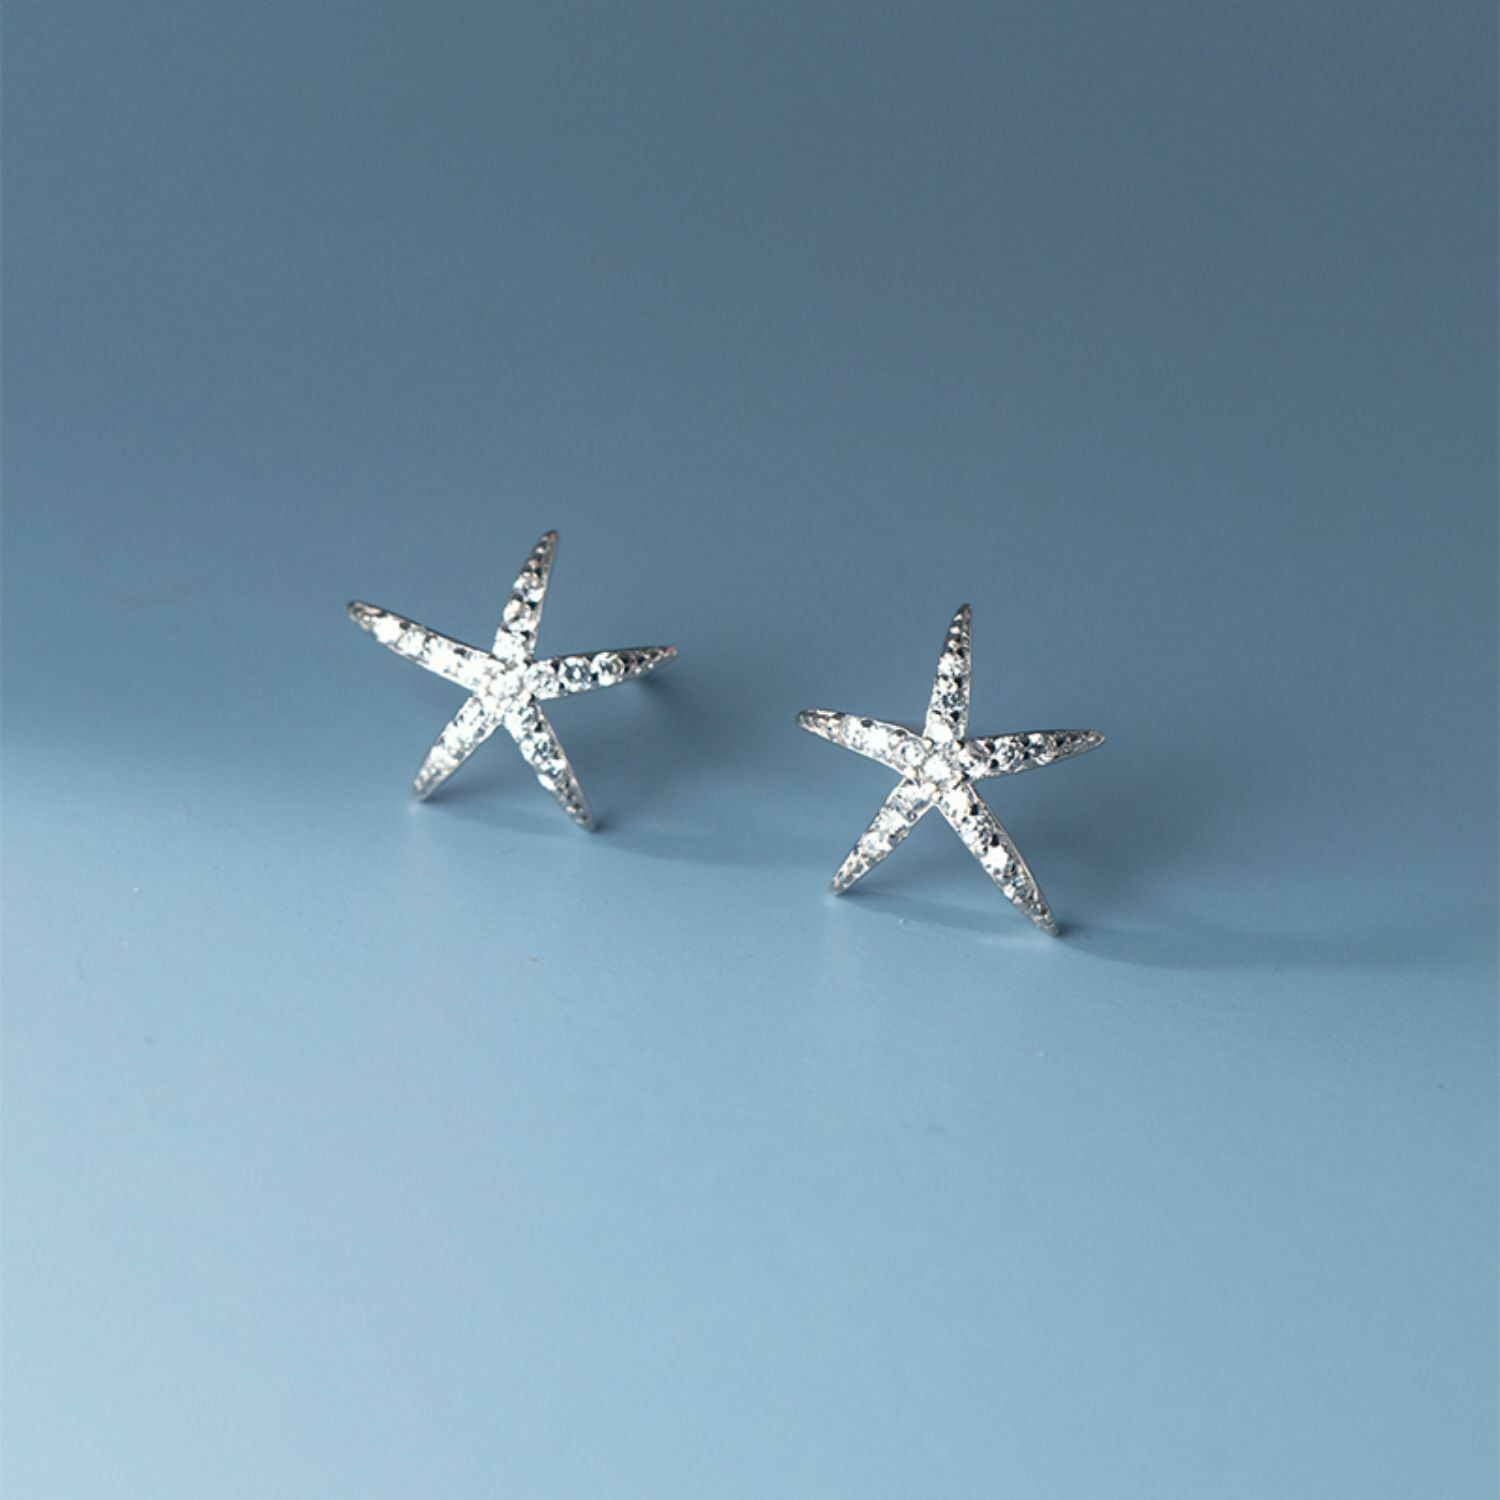 Cercei din argint Silver Sea Star image1